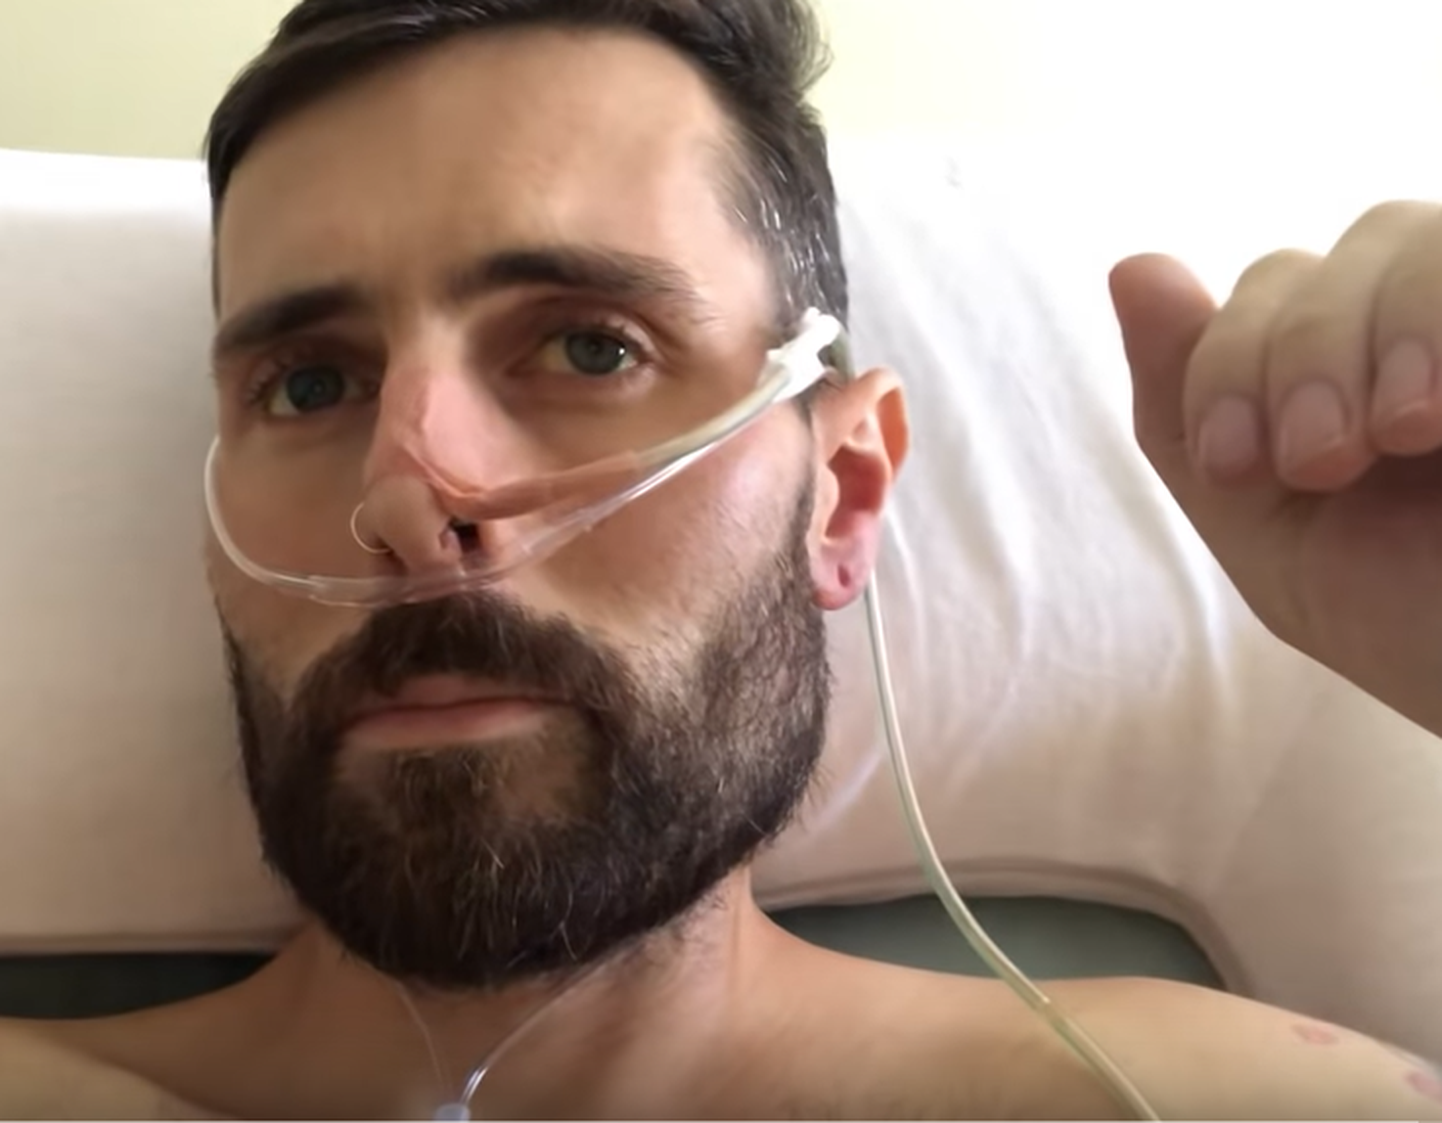 Ravimatu vähiga mees on jaganud kogu oma haigusteekonda läbi videote.